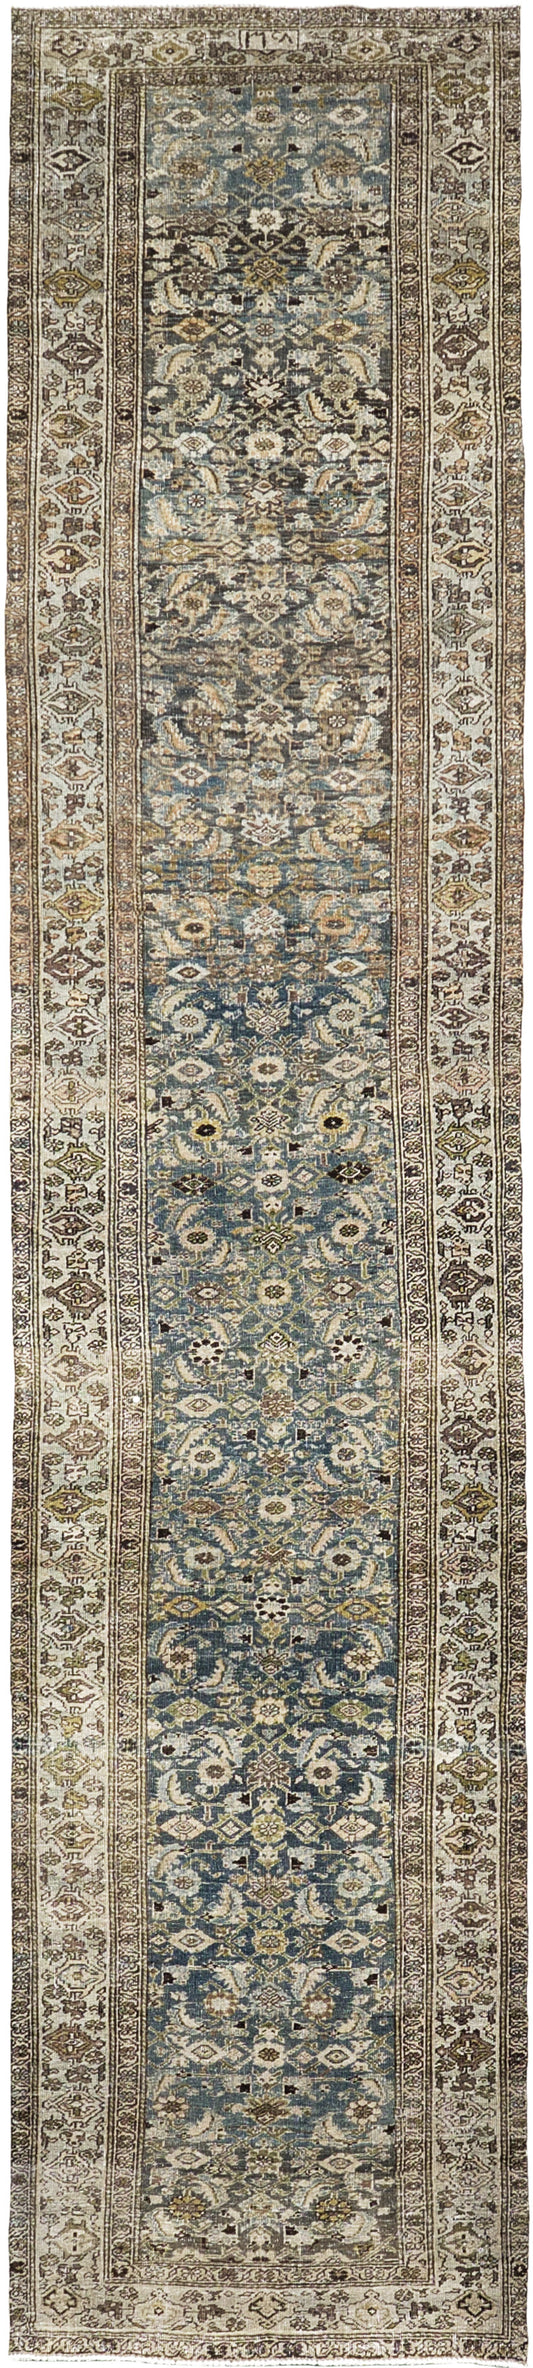 Antique Persian Bidjar Runner